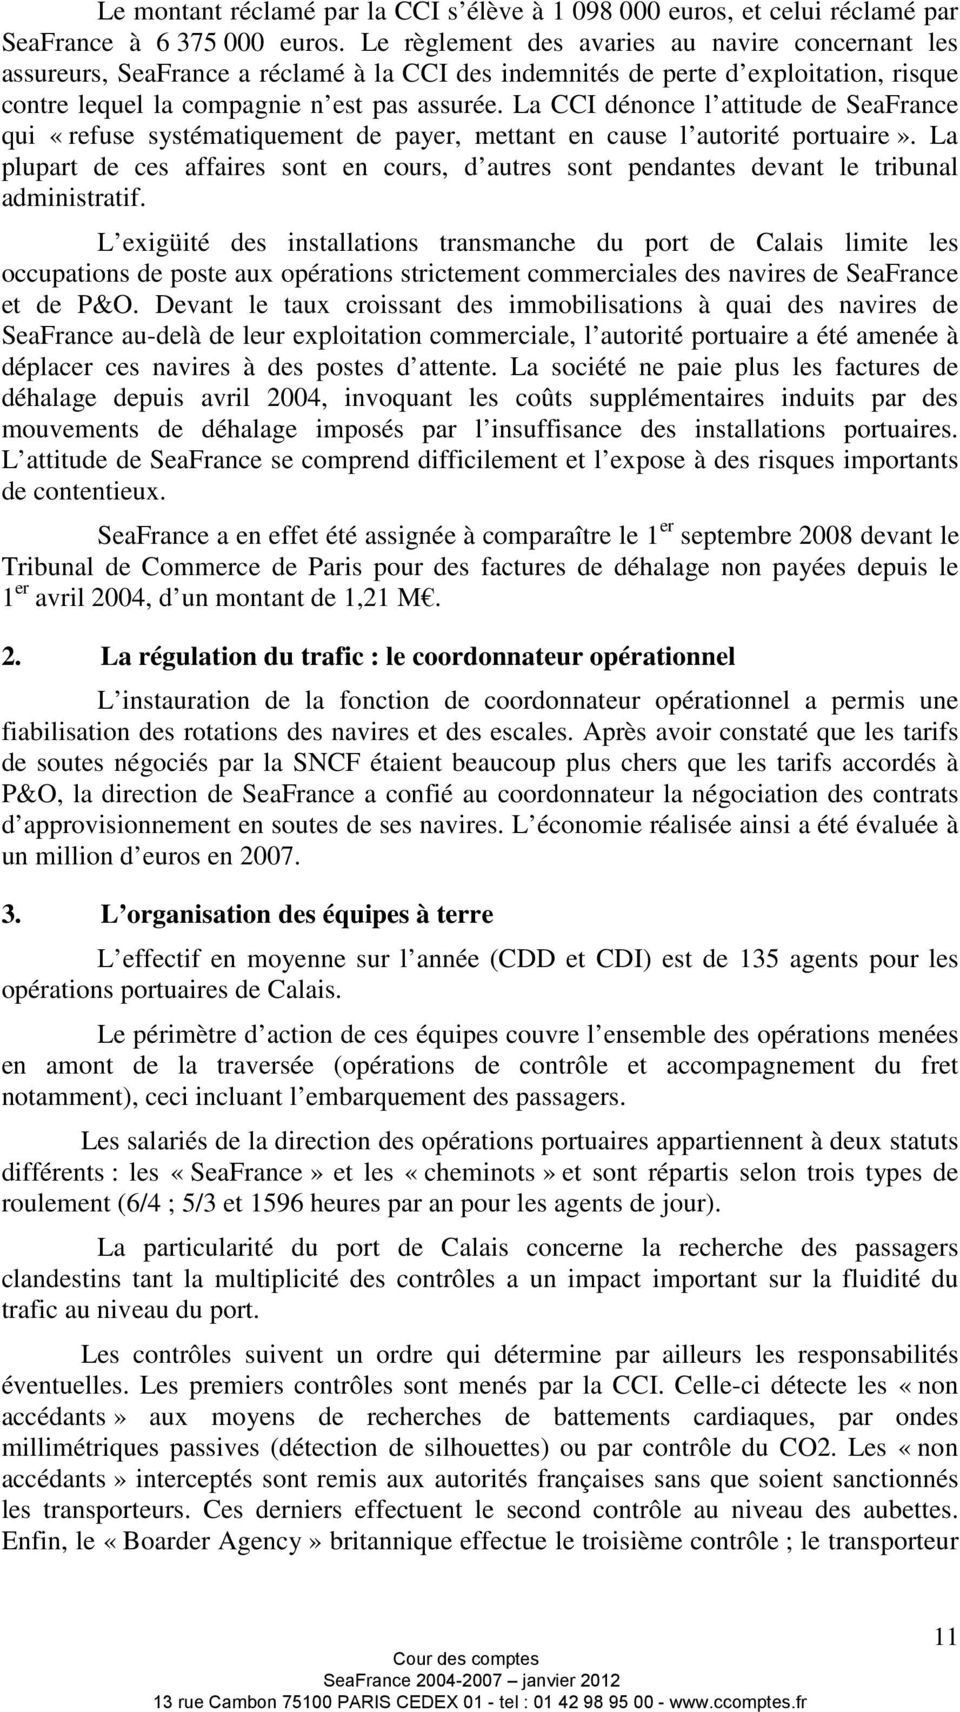 La CCI dénonce l attitude de SeaFrance qui «refuse systématiquement de payer, mettant en cause l autorité portuaire».